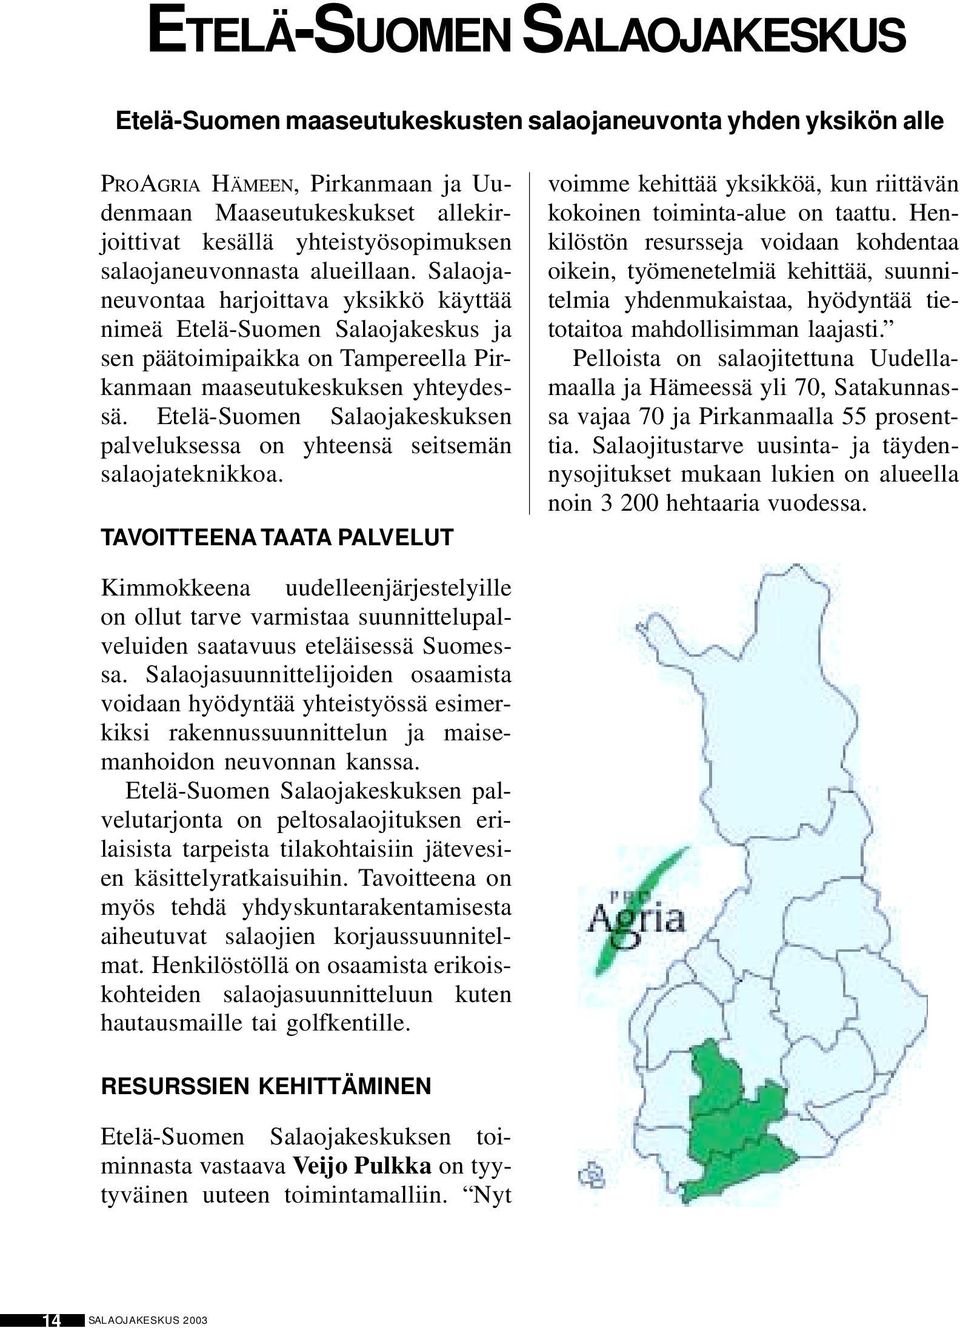 Etelä-Suomen Salaojakeskuksen palveluksessa on yhteensä seitsemän salaojateknikkoa. TAVOITTEENA TAATA PALVELUT voimme kehittää yksikköä, kun riittävän kokoinen toiminta-alue on taattu.